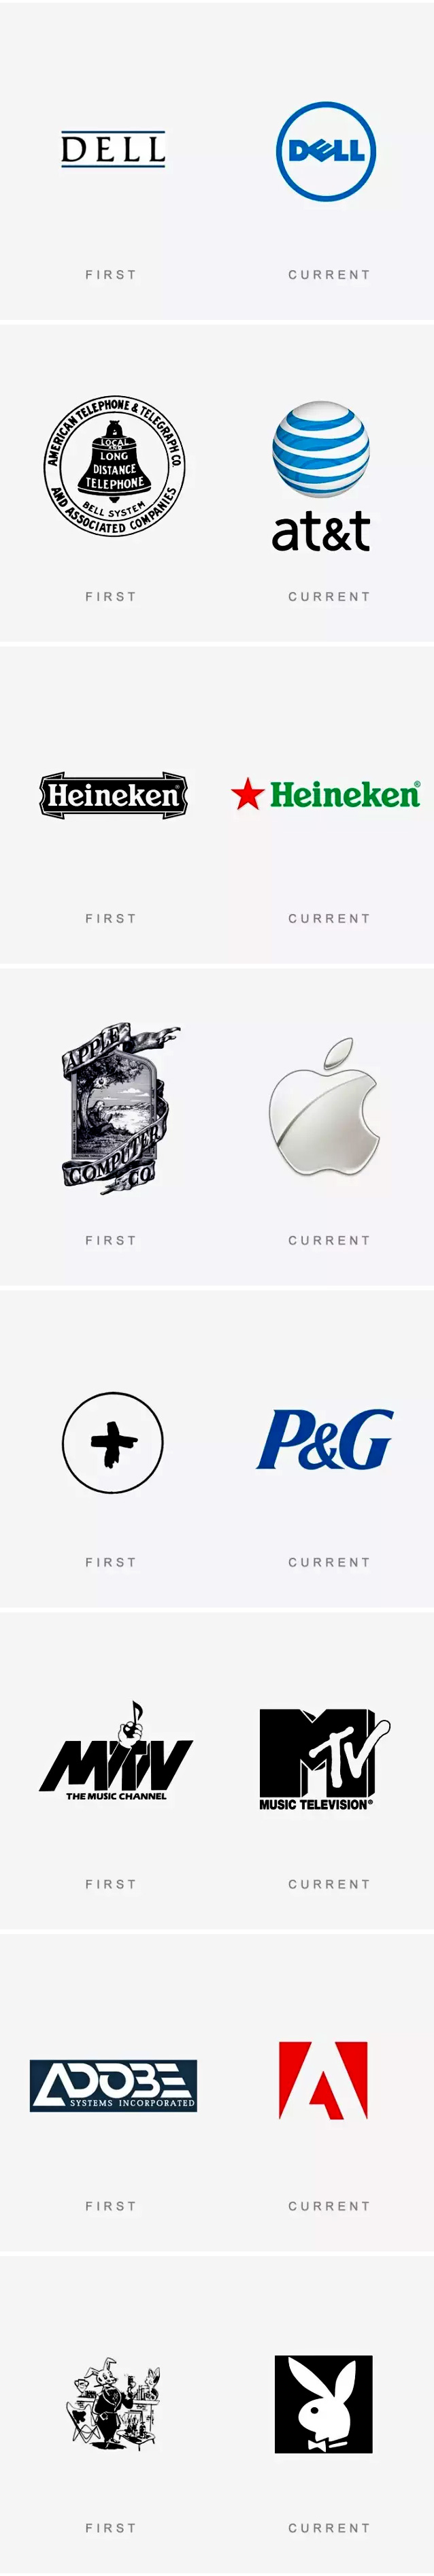 成都logo设计公司 商标设计公司就找观道沟通